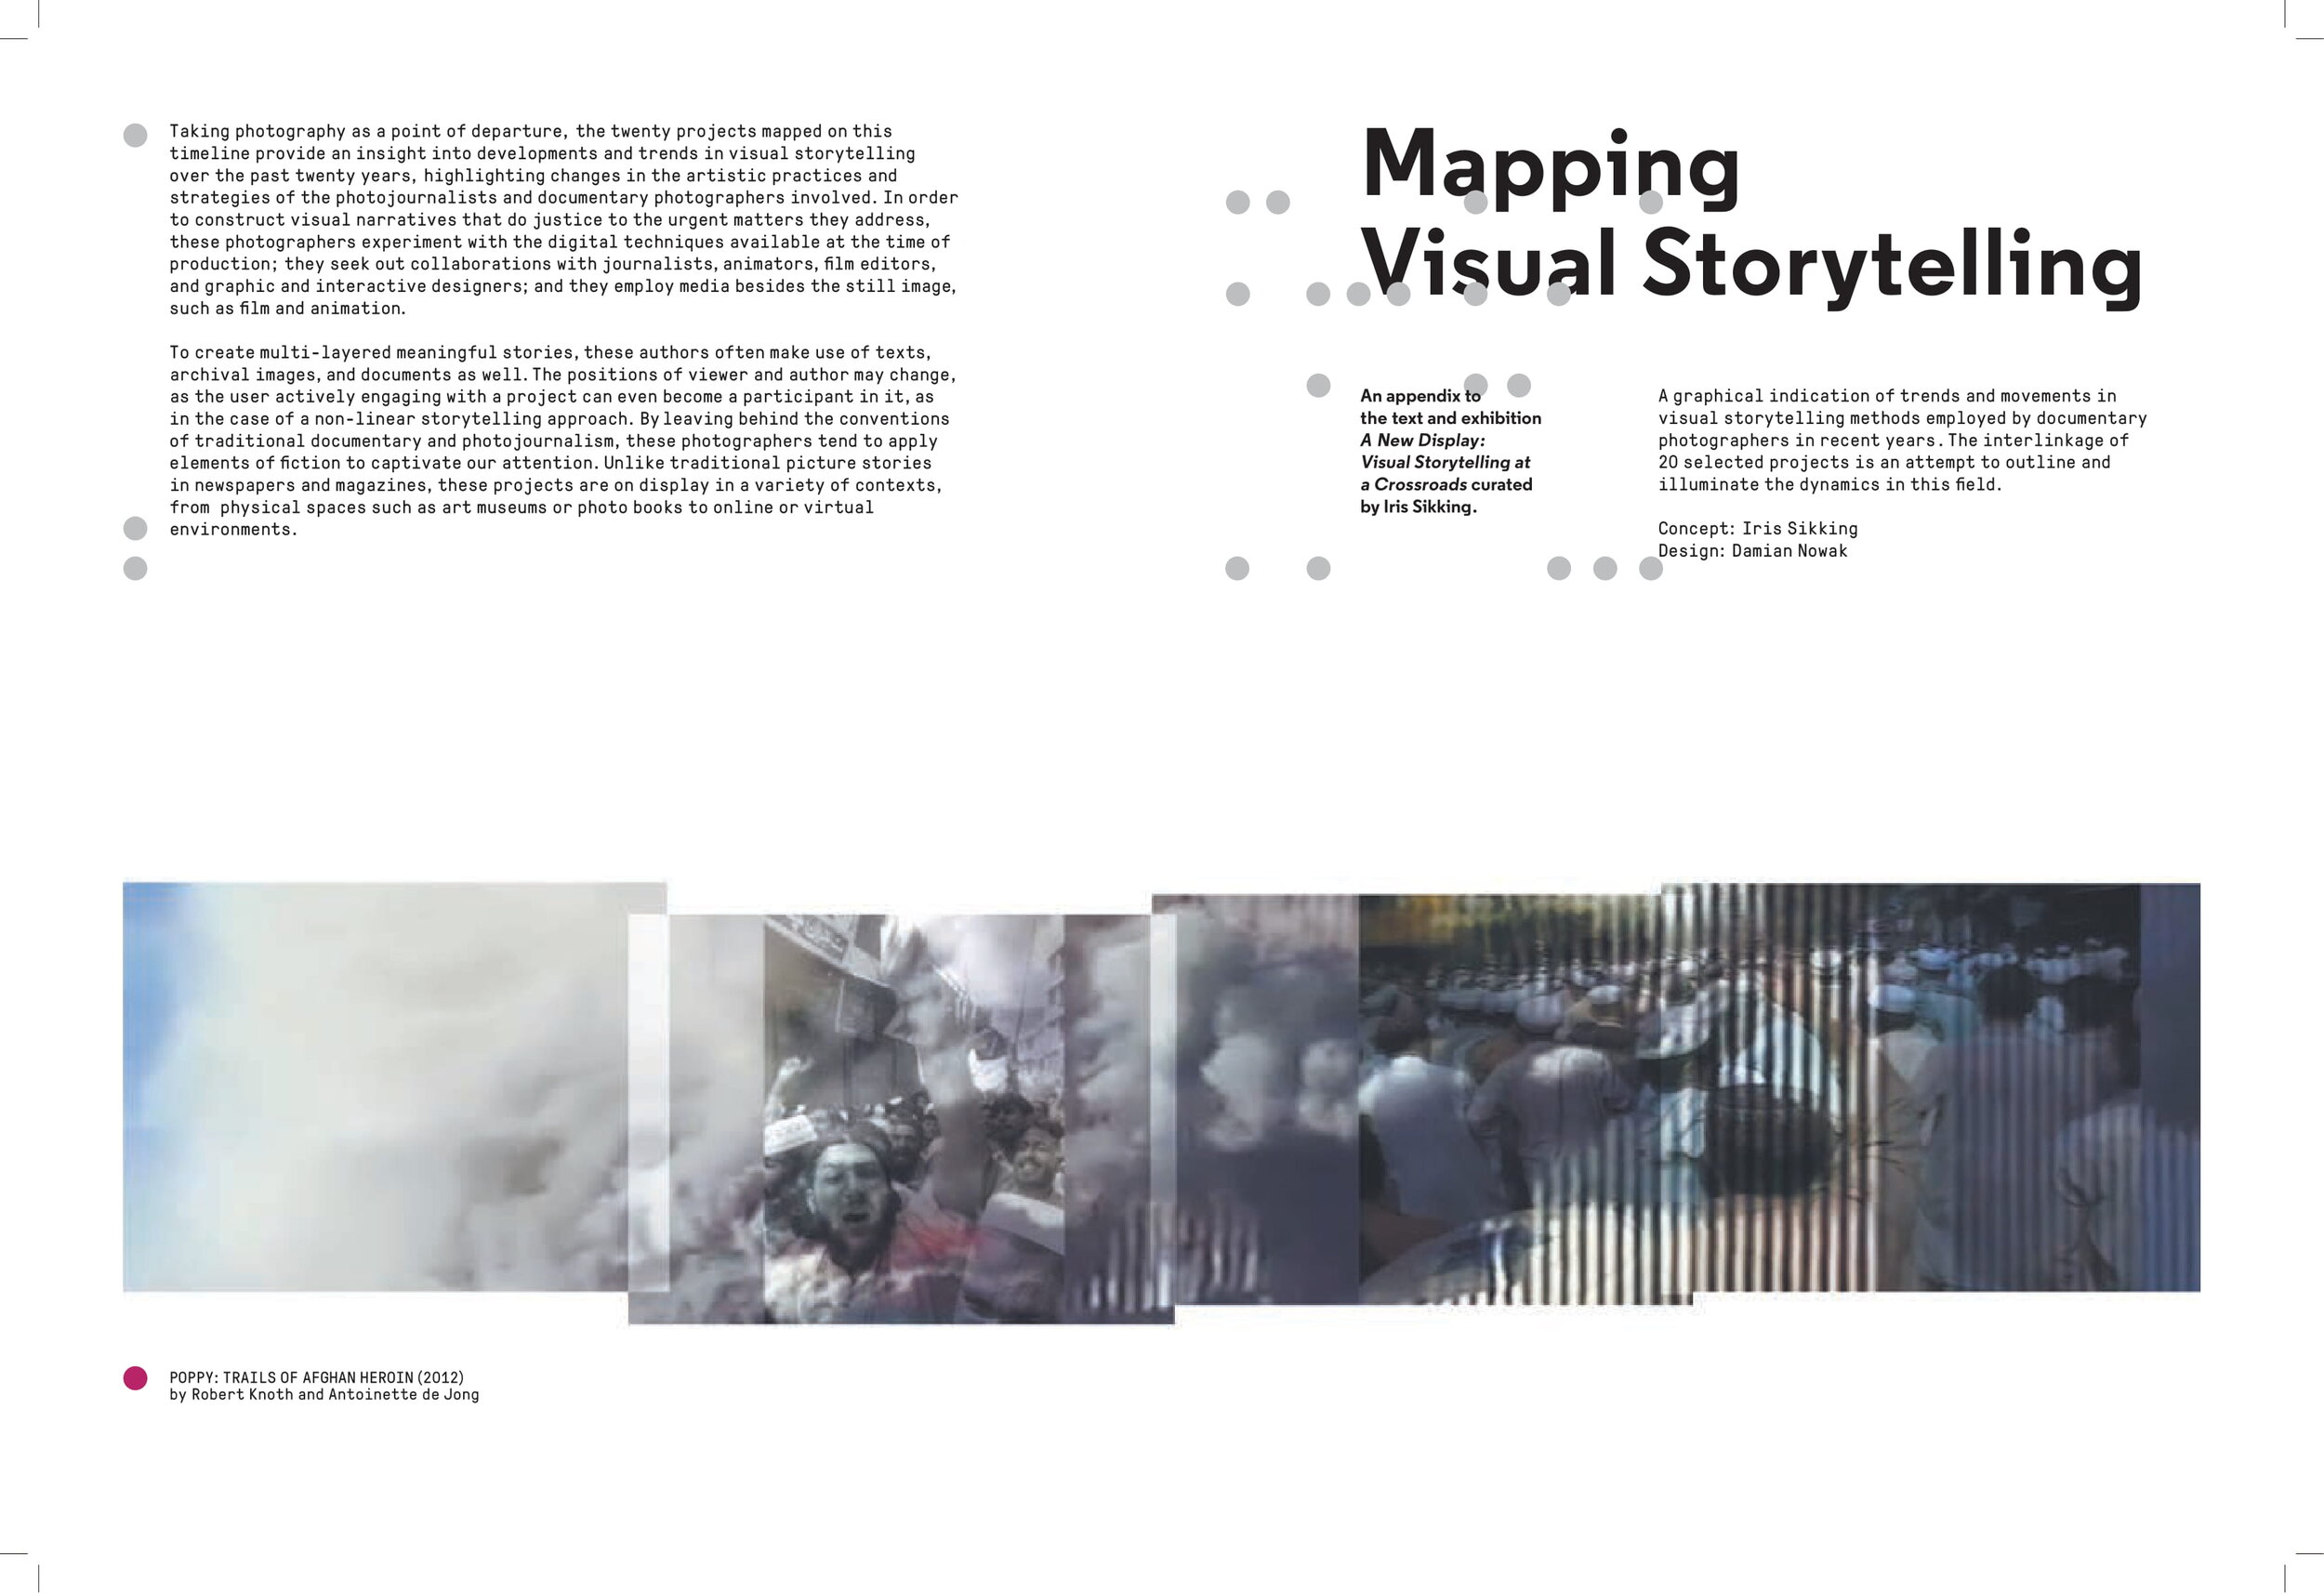 VisualStorytelling_MAP_IrisSikking-2.jpg